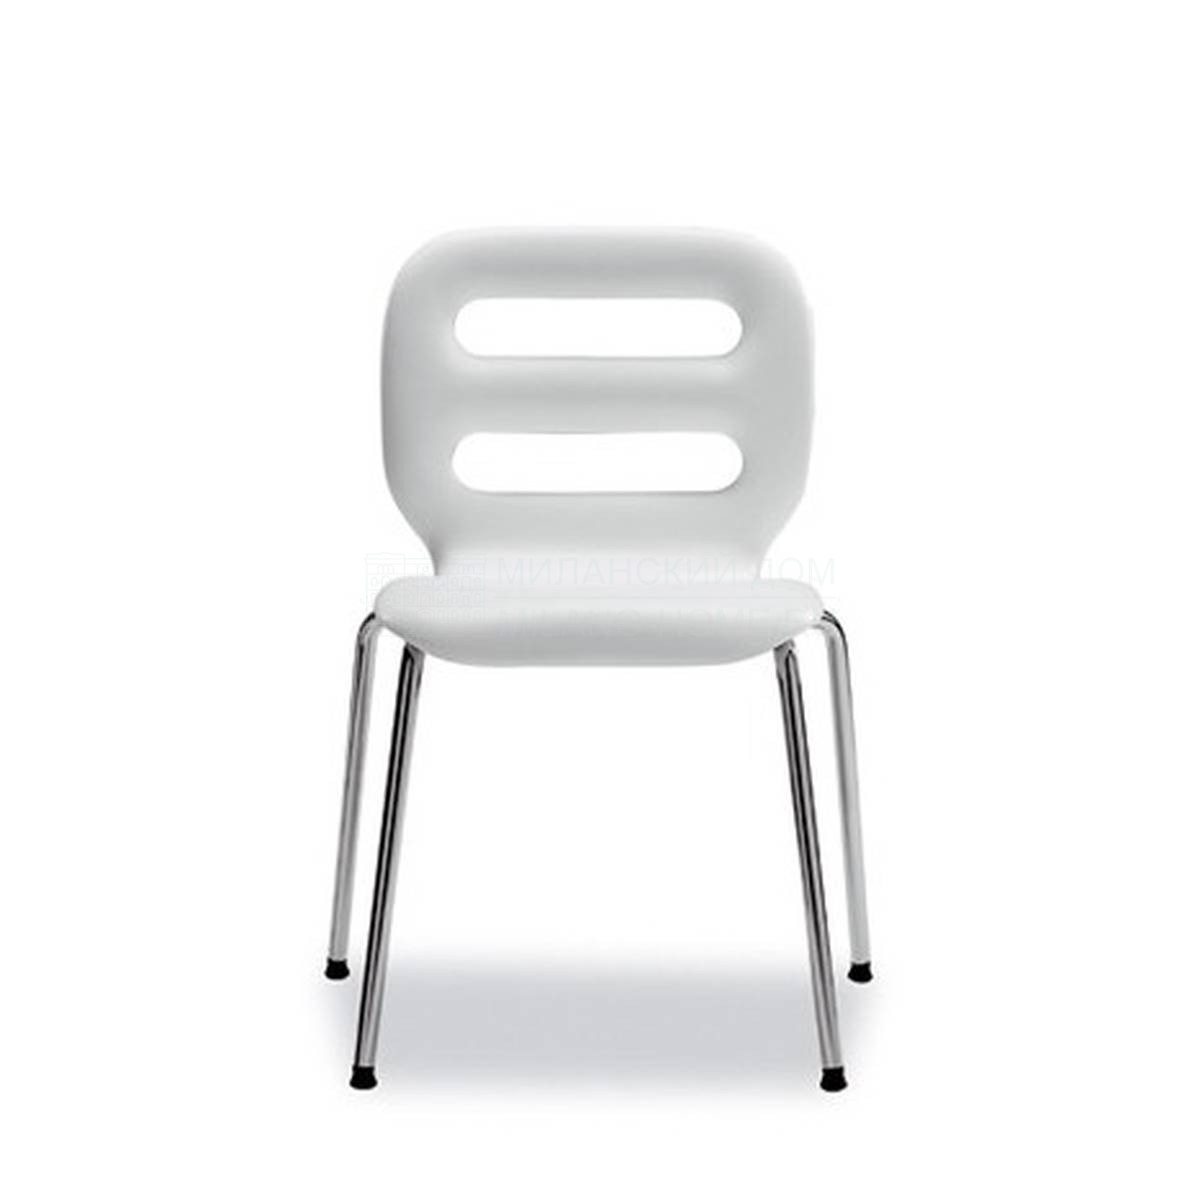 Металлический / Пластиковый стул Start из Италии фабрики TONON